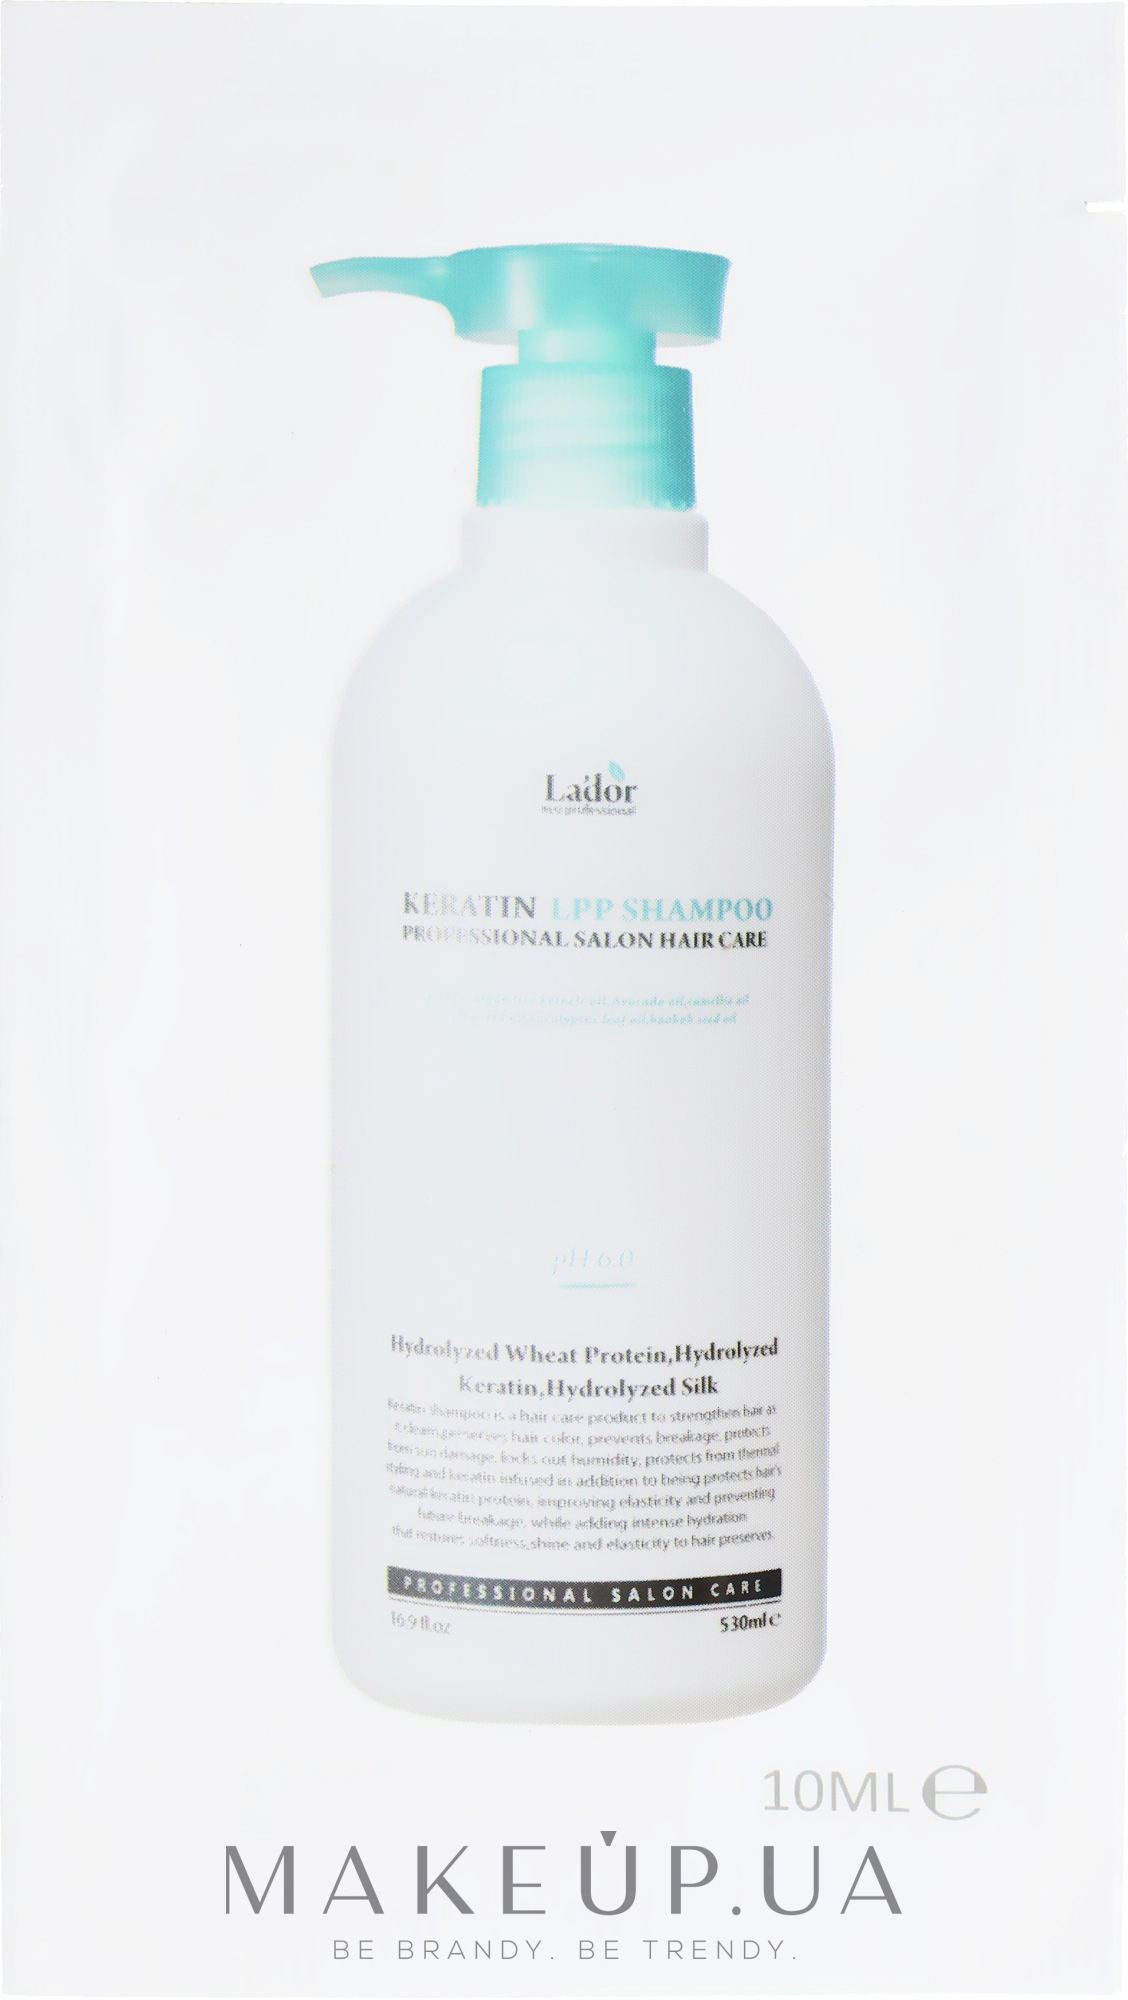 Кератиновий безсульфатний шампунь - La'dor Keratin LPP Shampoo (пробник) — фото 10ml